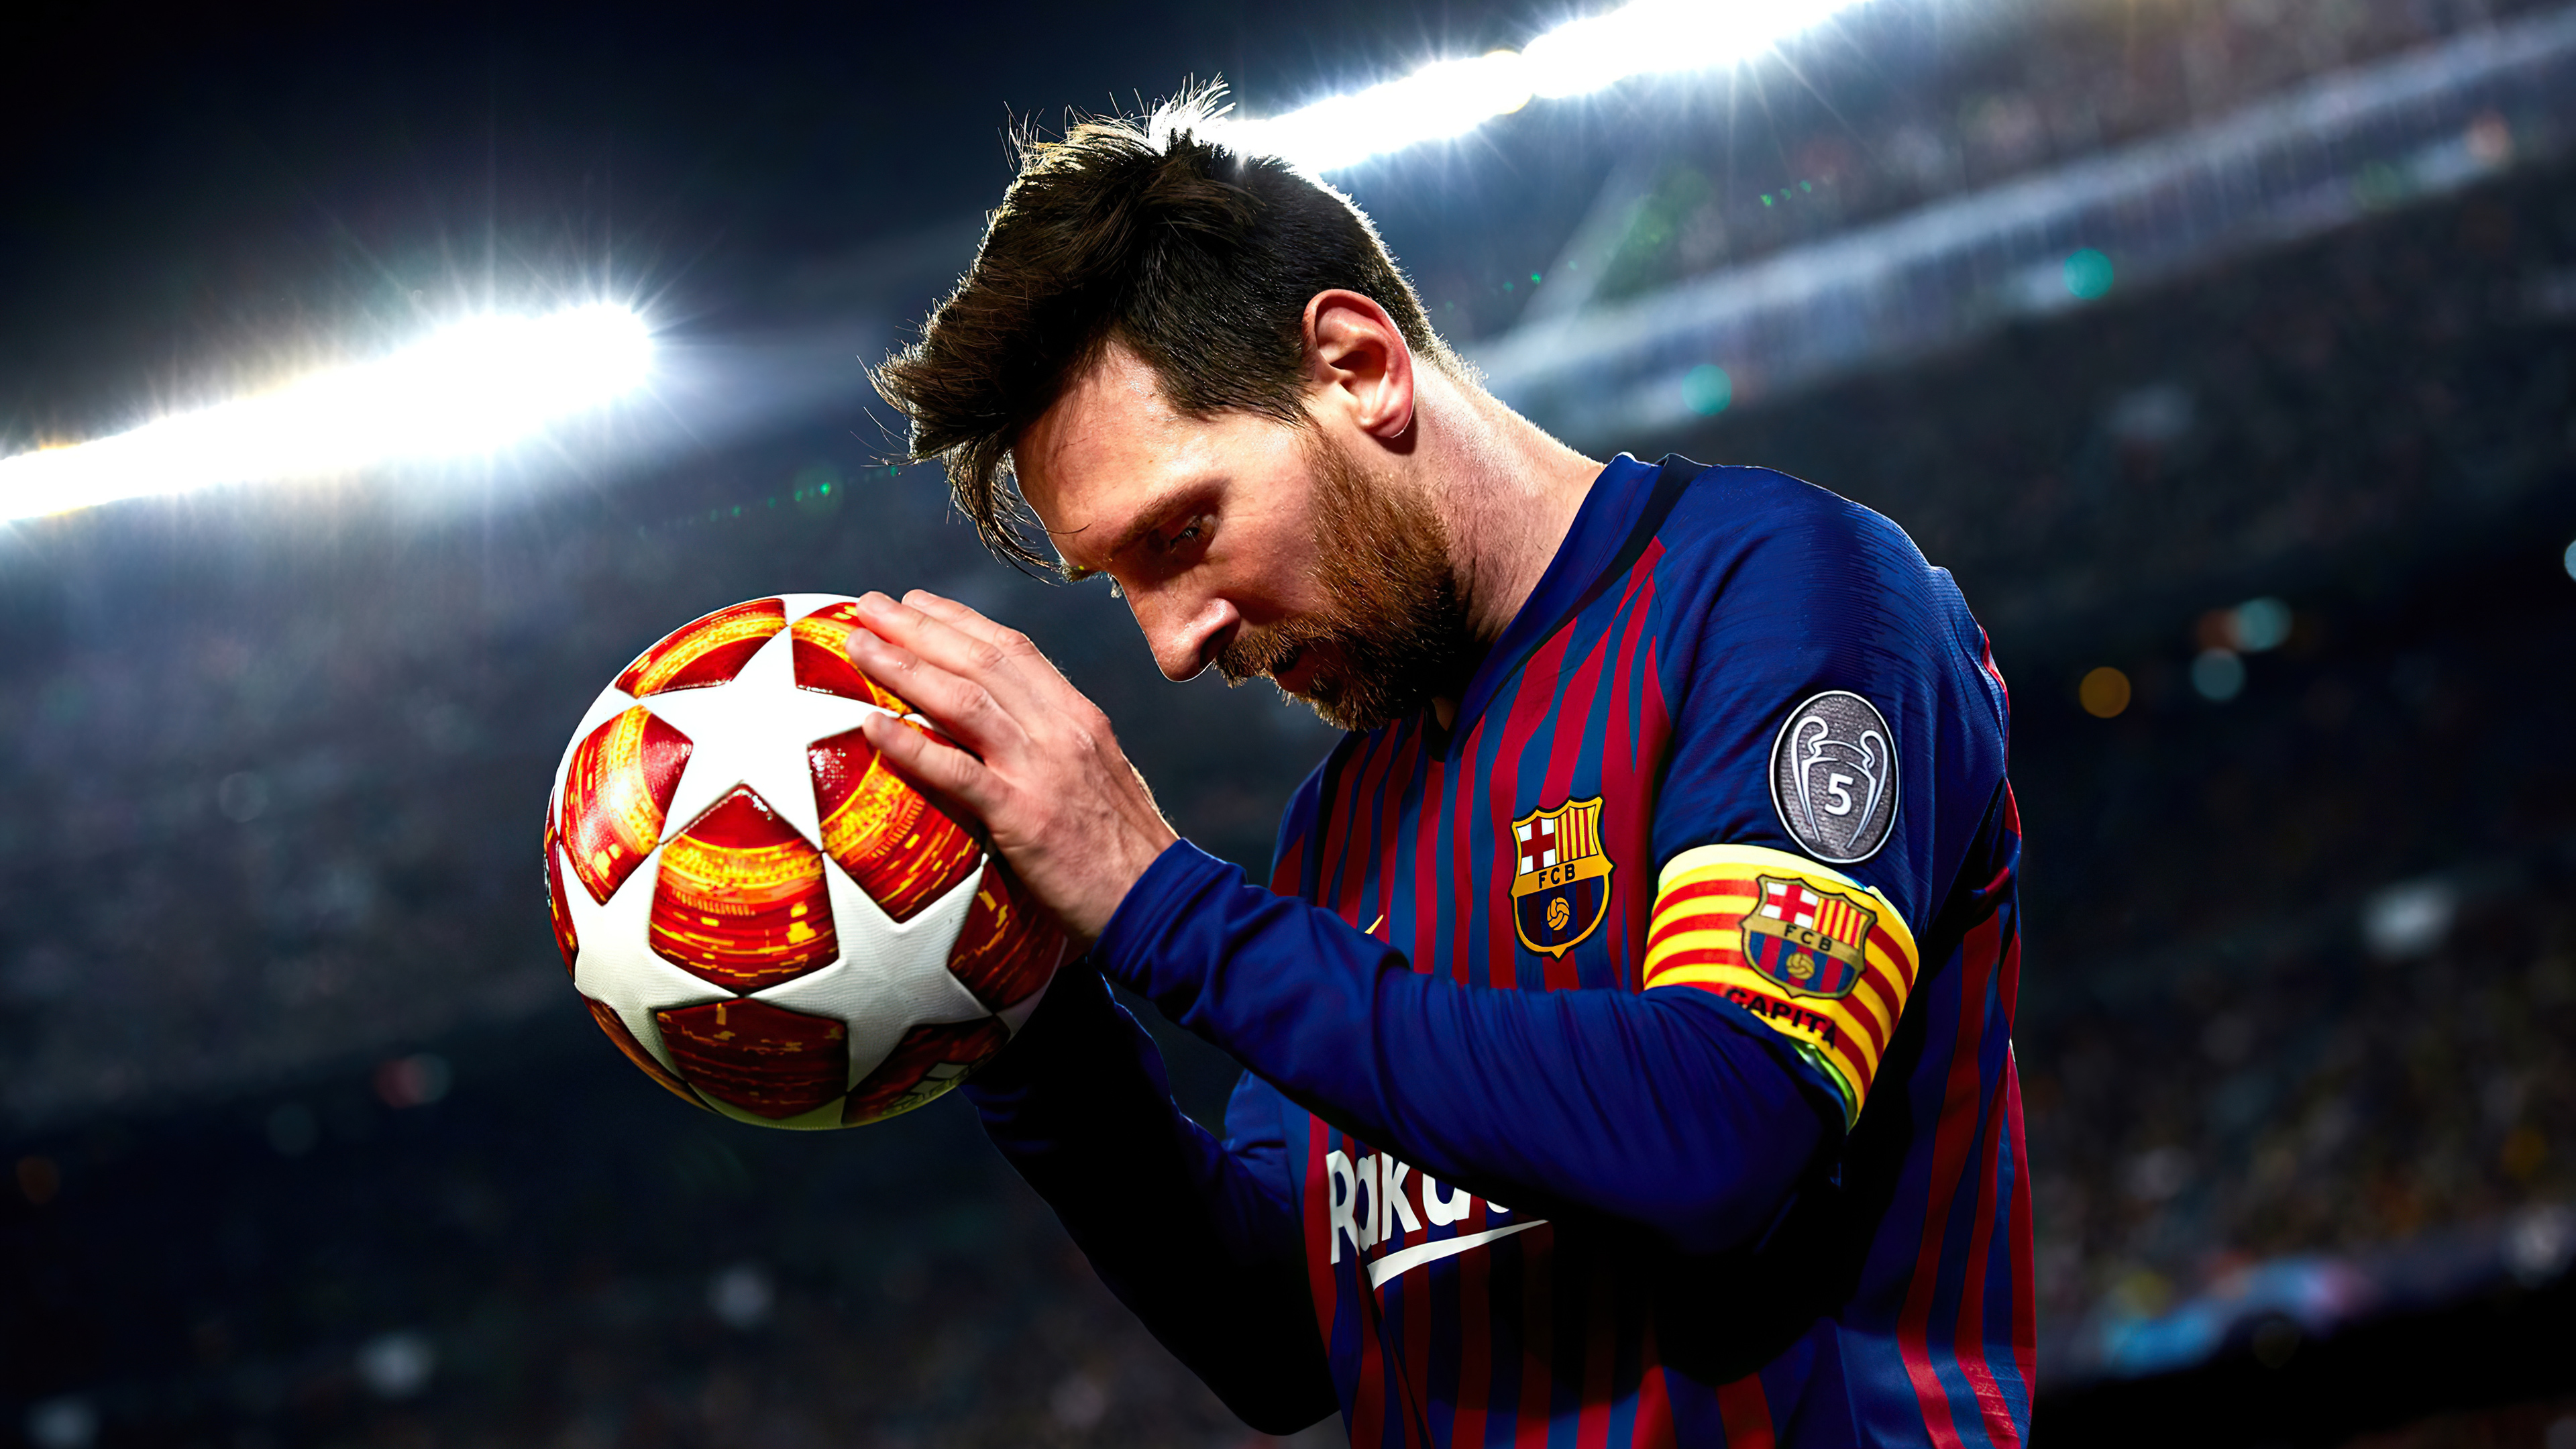 Lionel Messi: Chào mừng bạn đến với thế giới của Lionel Messi. Tận hưởng đường cong tinh tế và những pha đi bóng kỹ thuật đỉnh cao mà ngôi sao bóng đá huyền thoại này mang lại. Xem những bức ảnh, video và thông tin về cuộc đời của anh ấy sẽ khiến bạn có chiều sâu về cầu thủ người Argentina này.